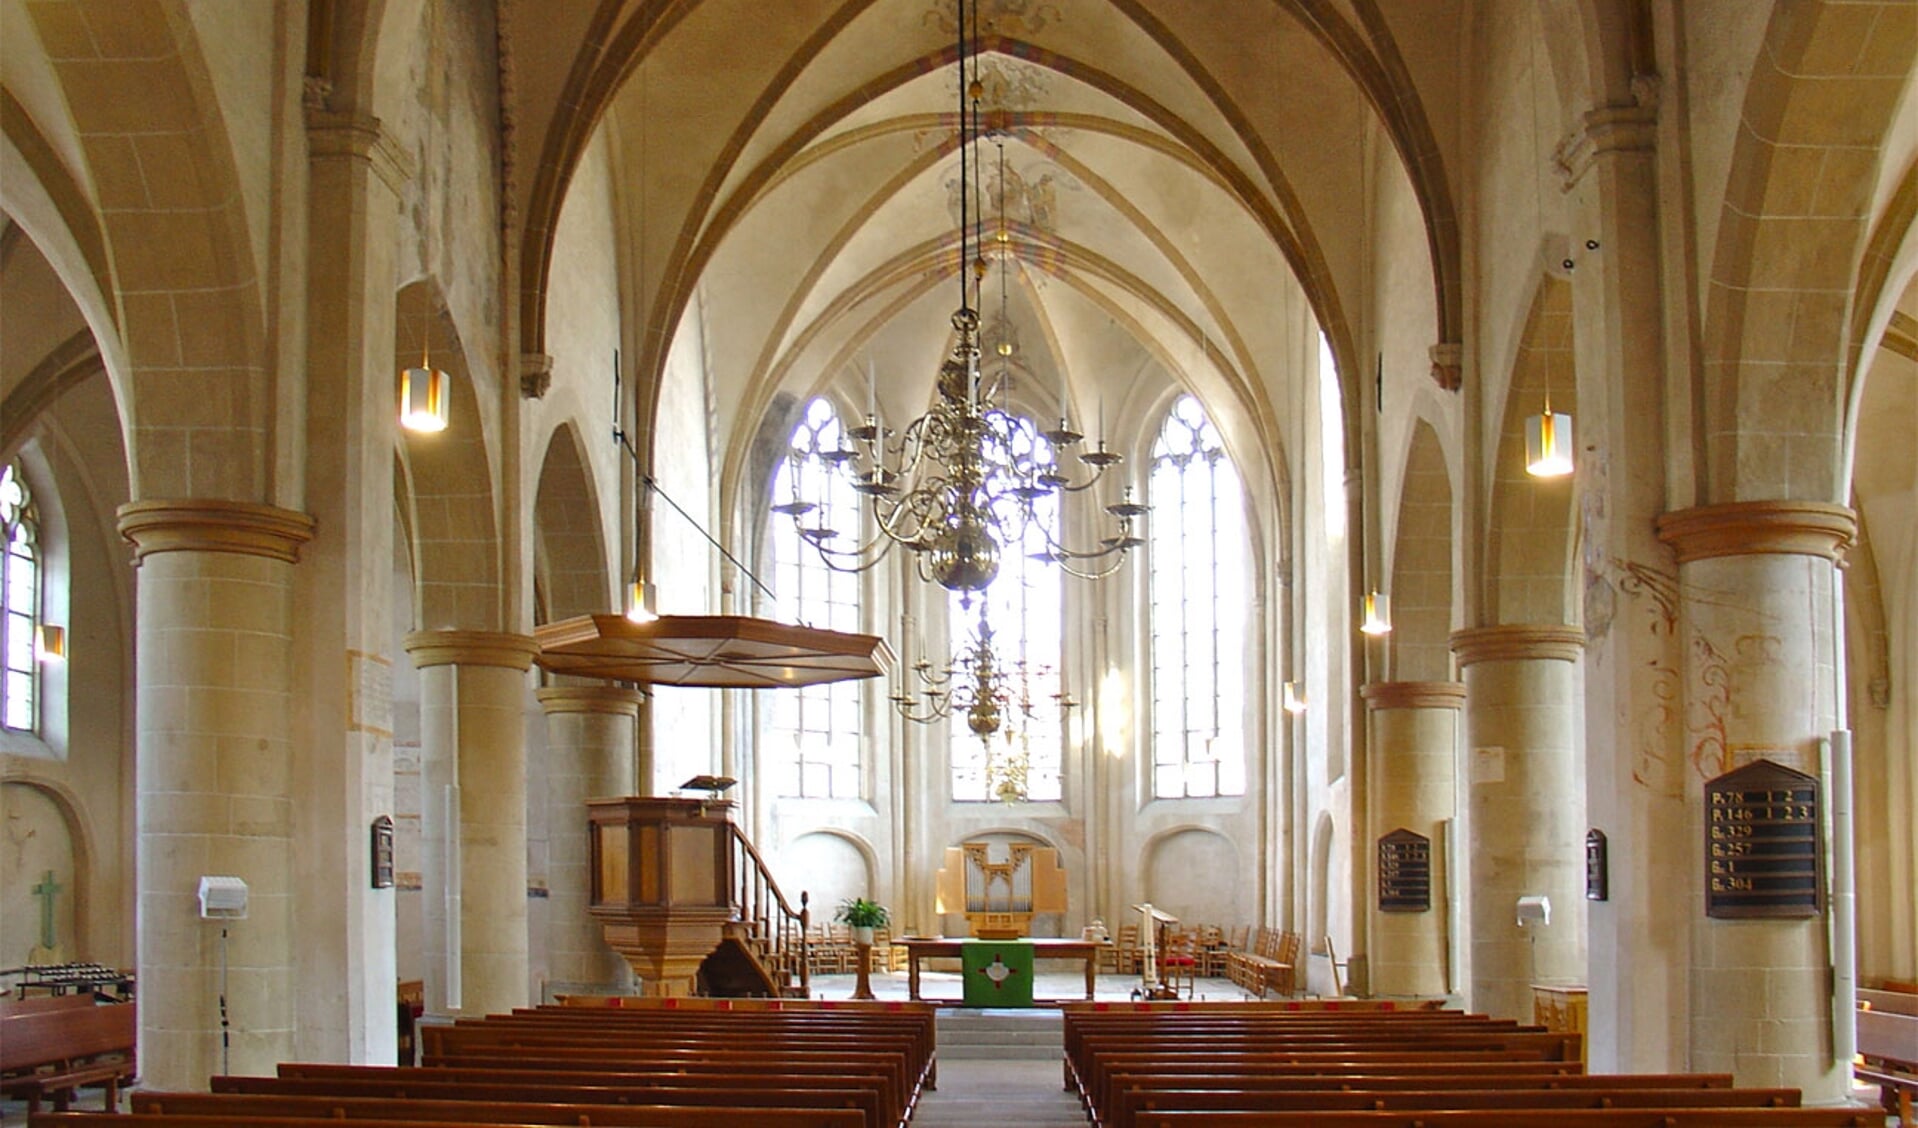 Het interieur van de kerk. Foto: PR